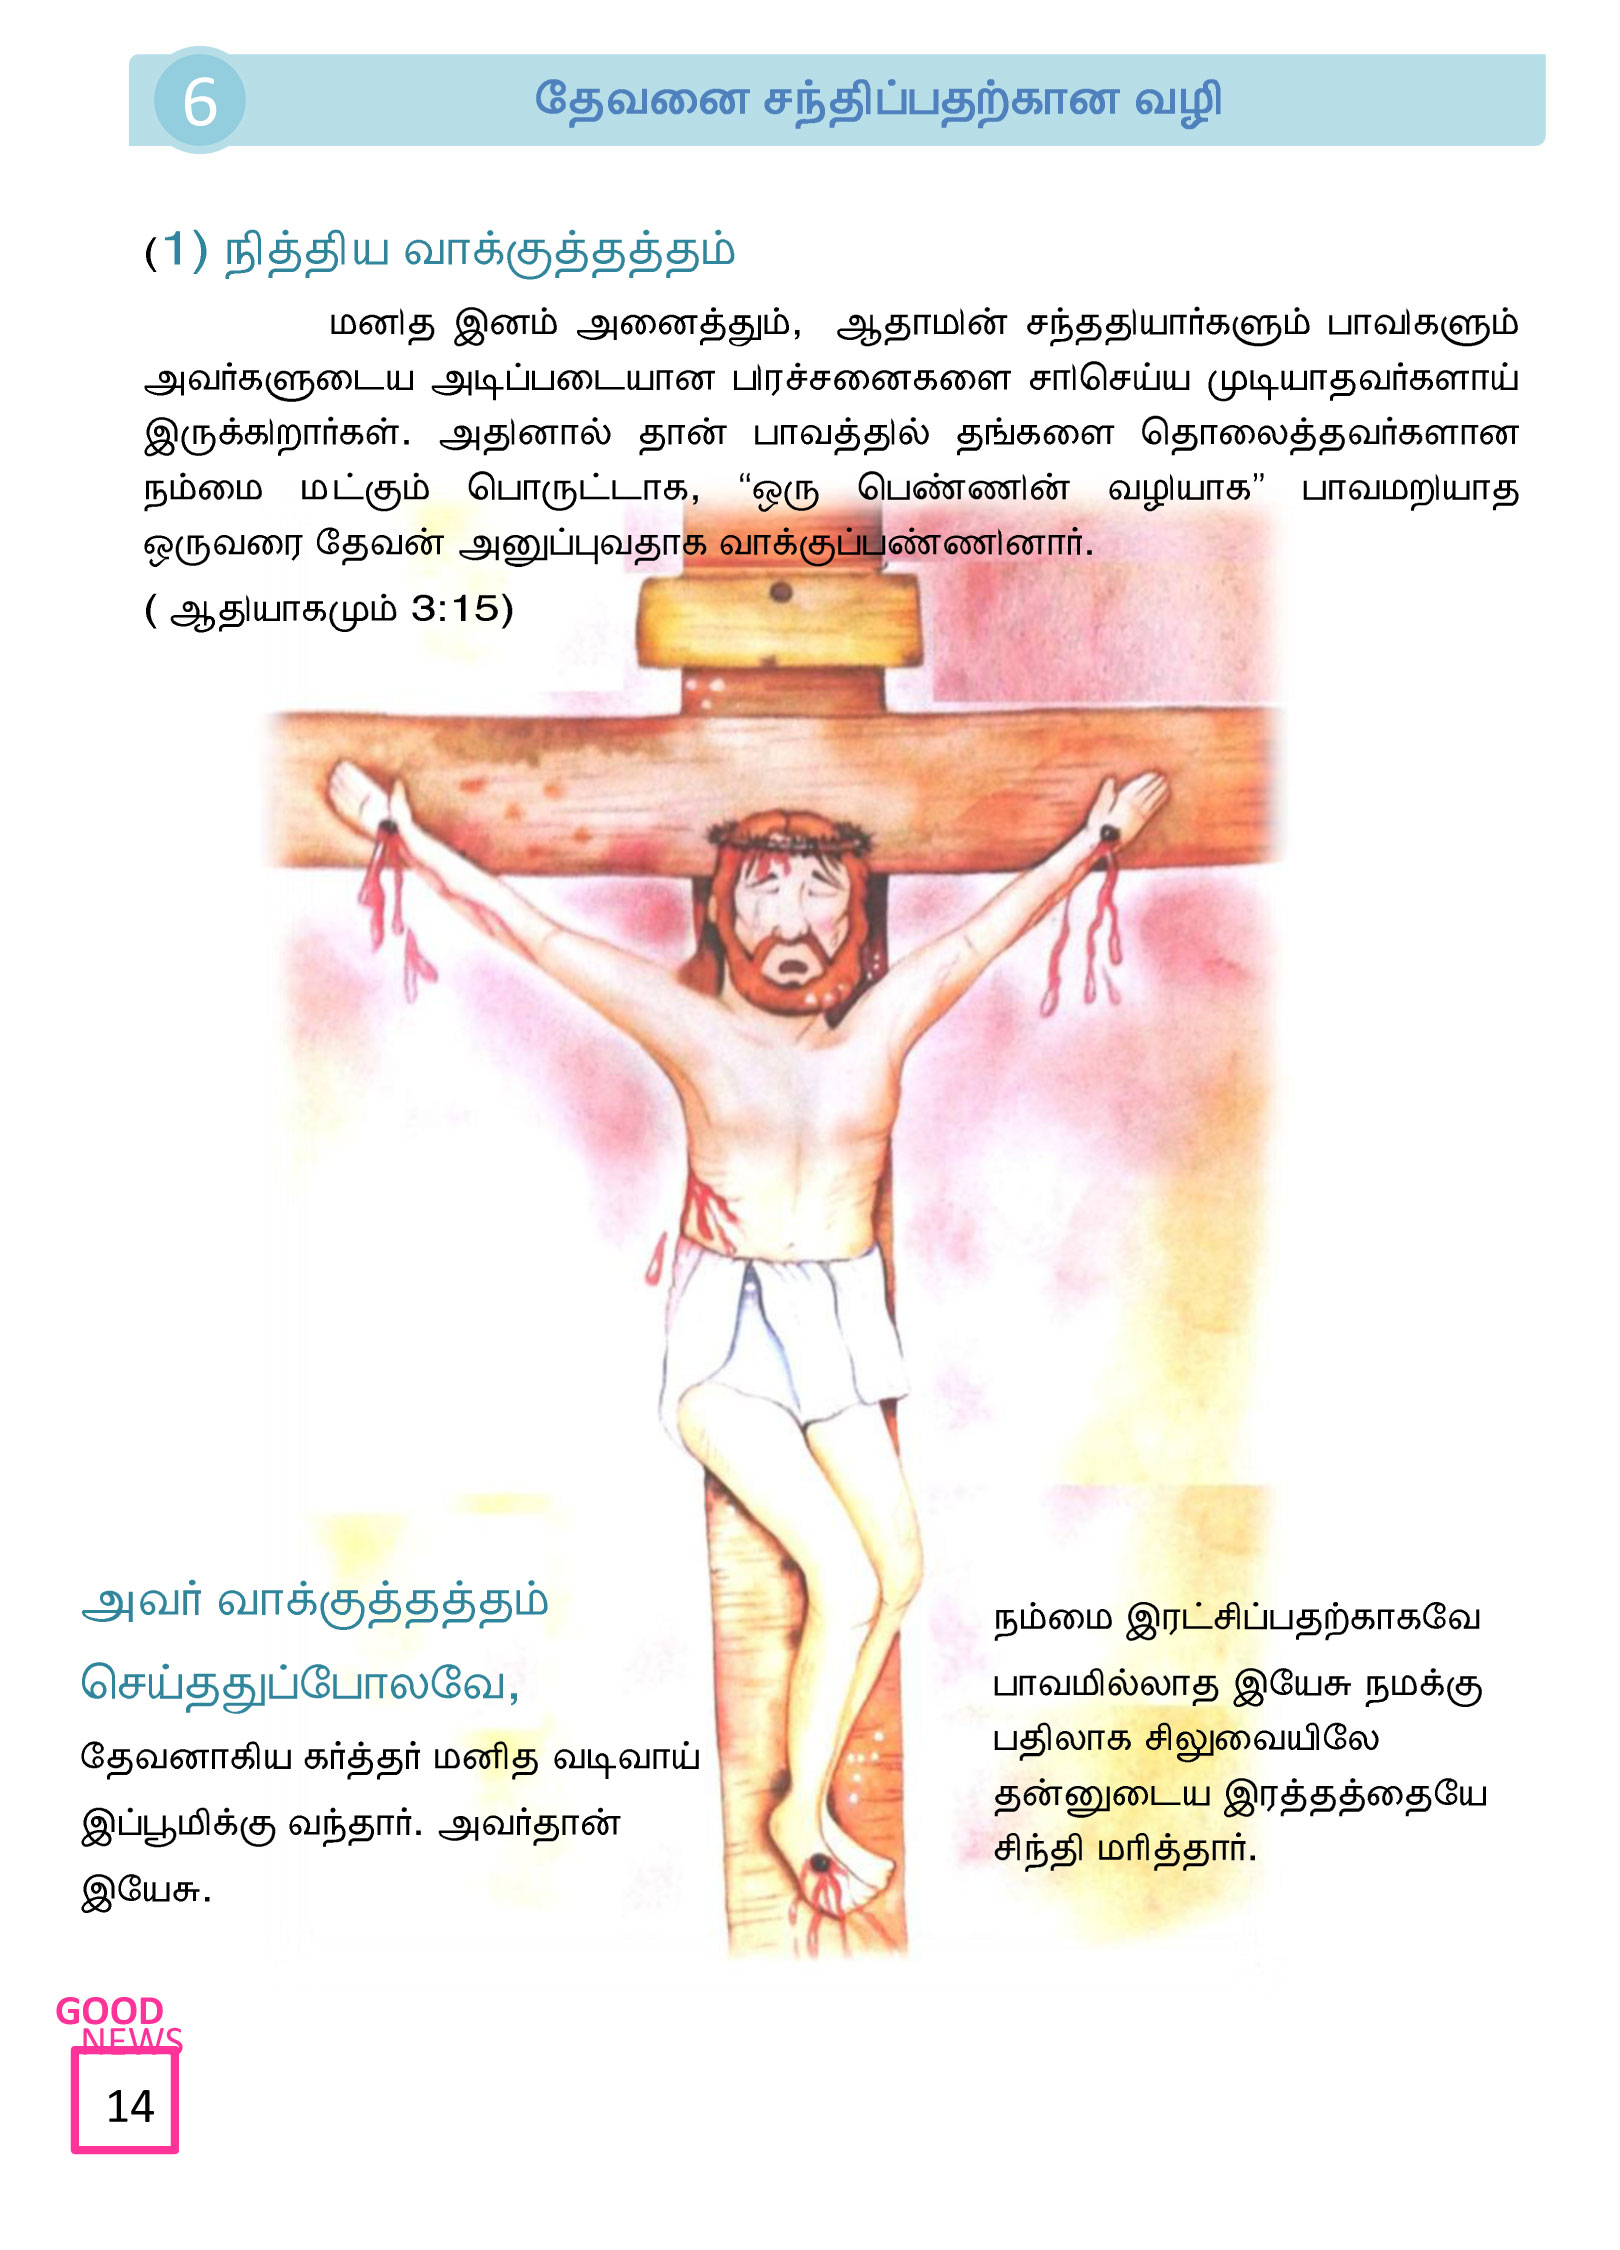 Tamil-Evangelism-Book-Pdf-3-14.jpg